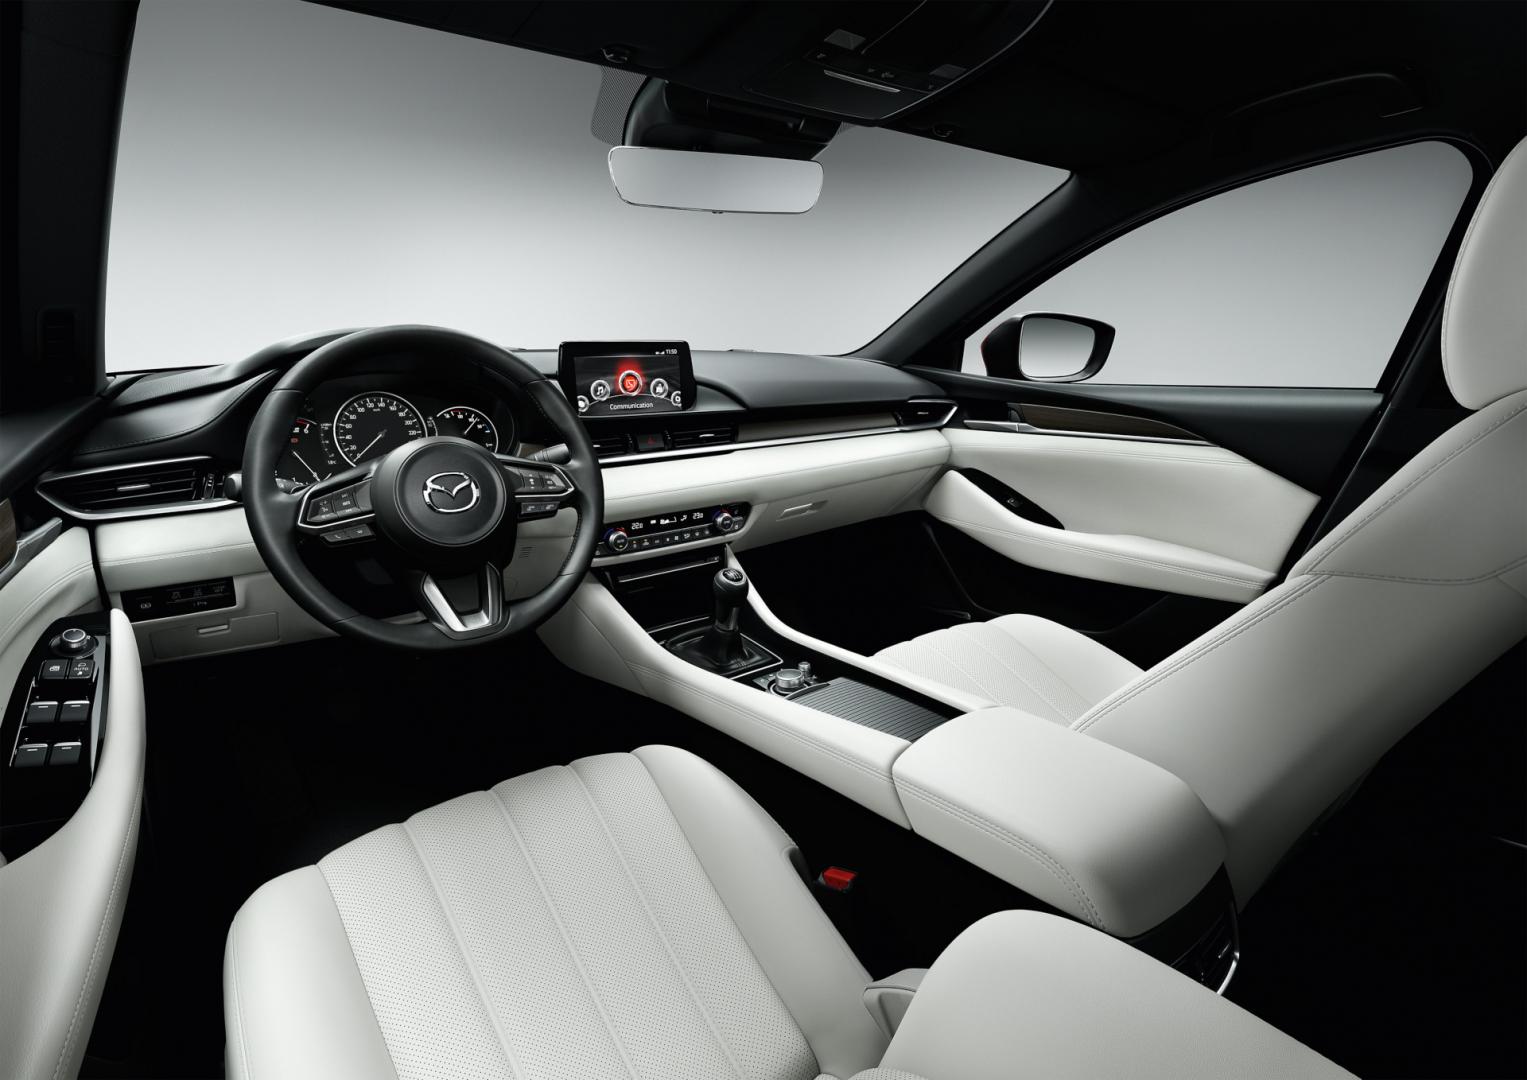 Nie oceniaj po okładce nowa Mazda 6 • AutoCentrum.pl